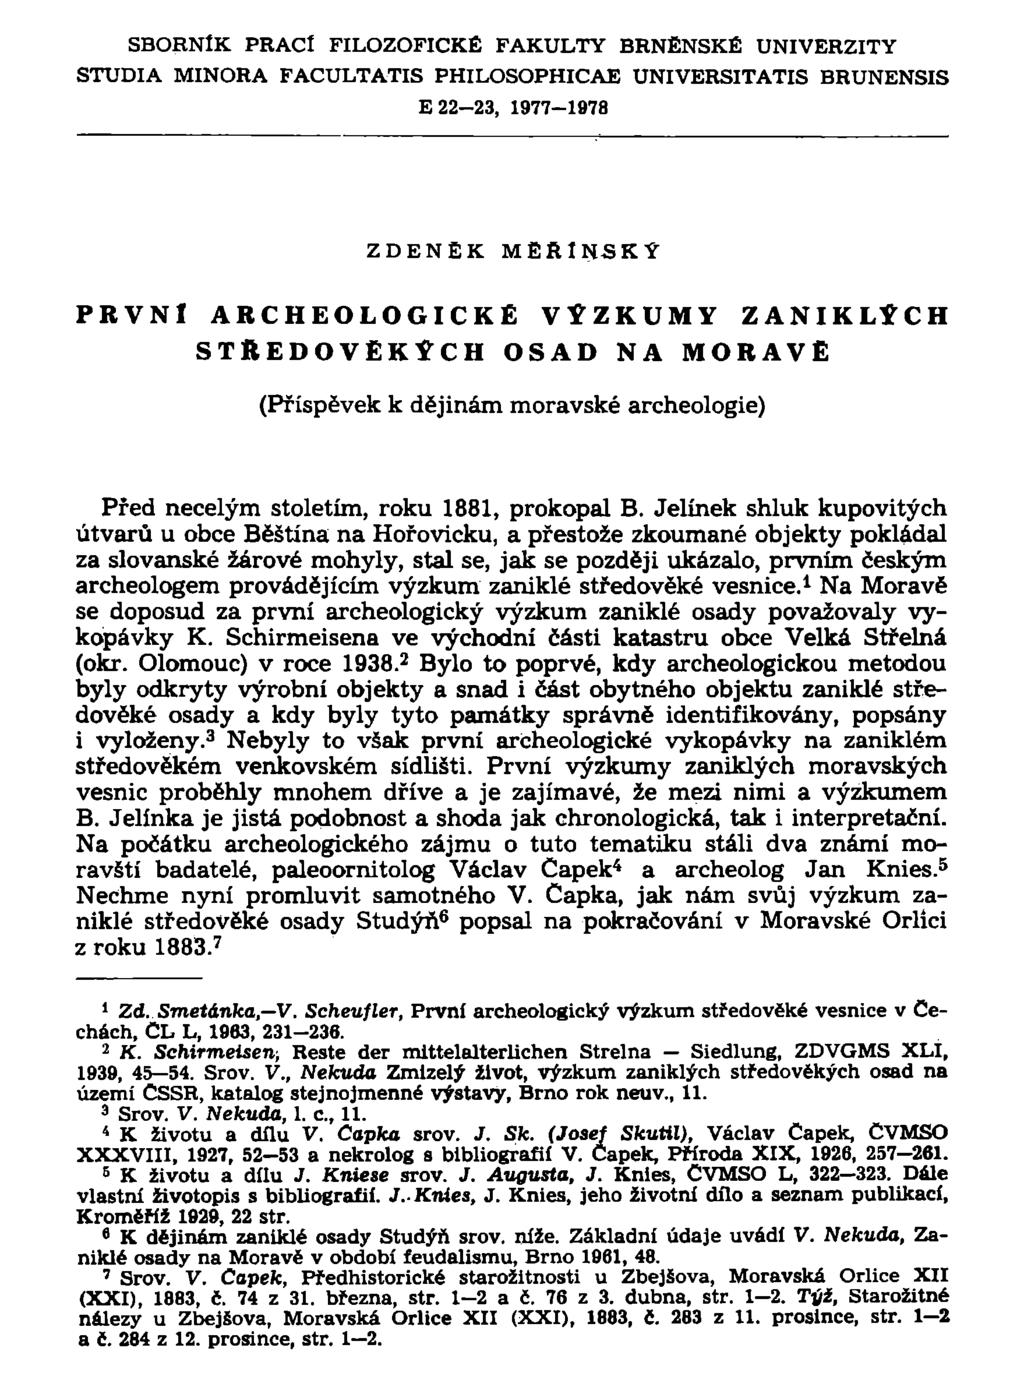 SBORNÍK PRACÍ FILOZOFICKÉ FAKULTY BRNĚNSKÉ UNIVERZITY STUDIA MINORA FACULTATIS PHILOSOPHICAE UNIVERSITATIS BRUNENSIS E 22-23, 1977-1978 ZDENEK MÉRlNSKÝ PRVNÍ ARCHEOLOGICKÉ VÝZKUMY ZANIKLÝCH